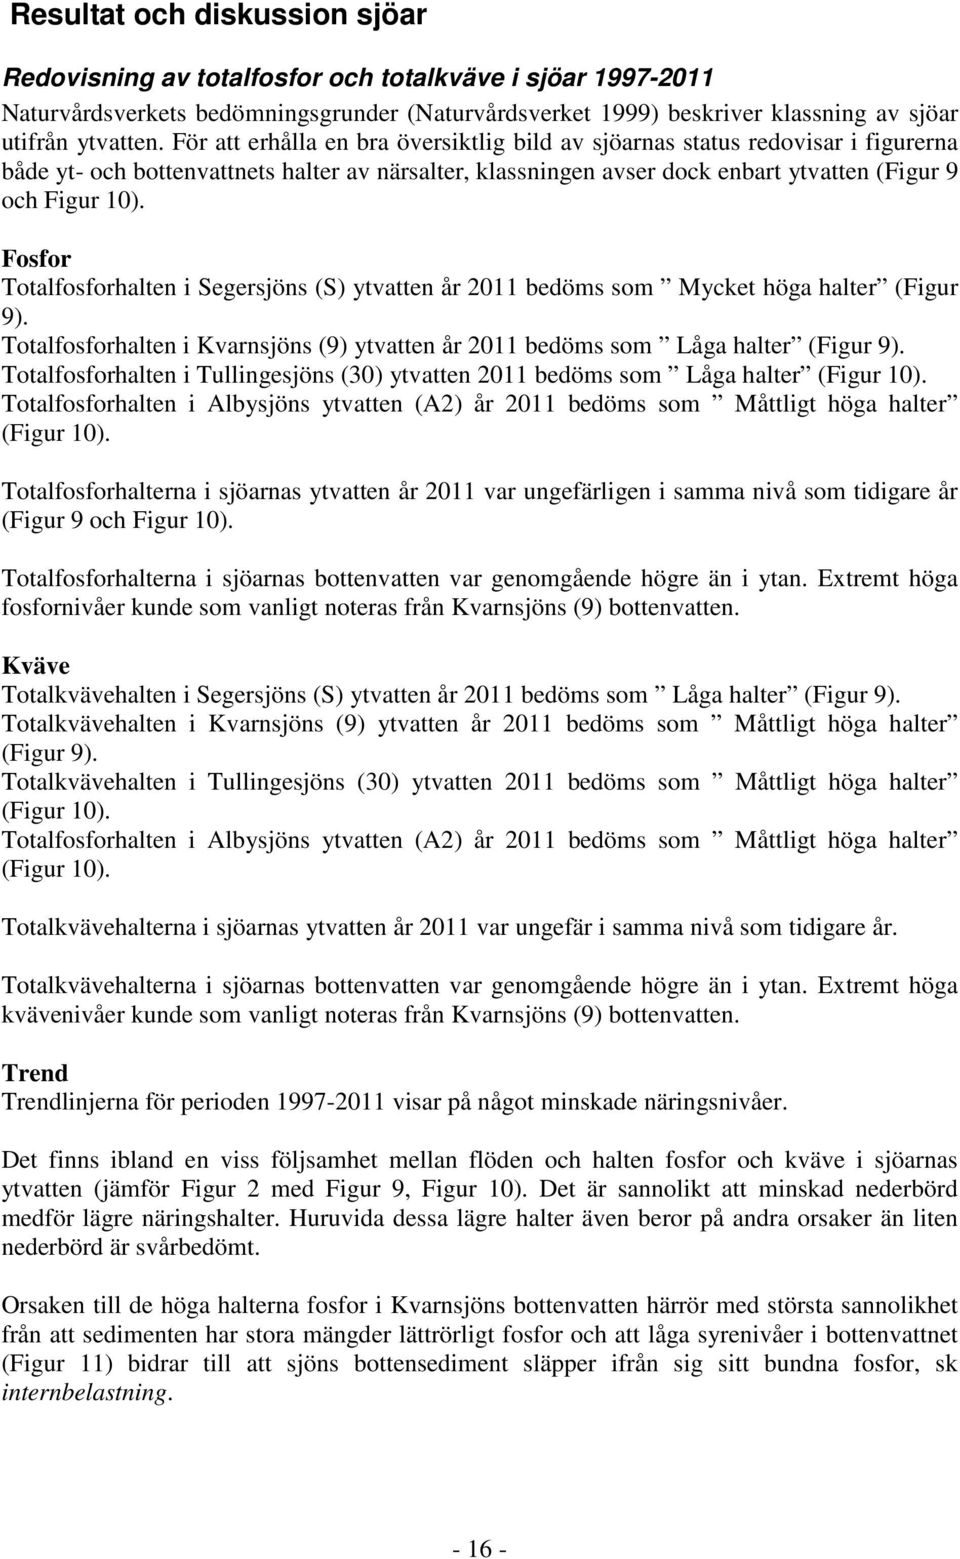 Fosfor Totalfosforhalten i Segersjöns (S) ytvatten år 2011 bedöms som Mycket höga halter (Figur 9). Totalfosforhalten i Kvarnsjöns (9) ytvatten år 2011 bedöms som Låga halter (Figur 9).